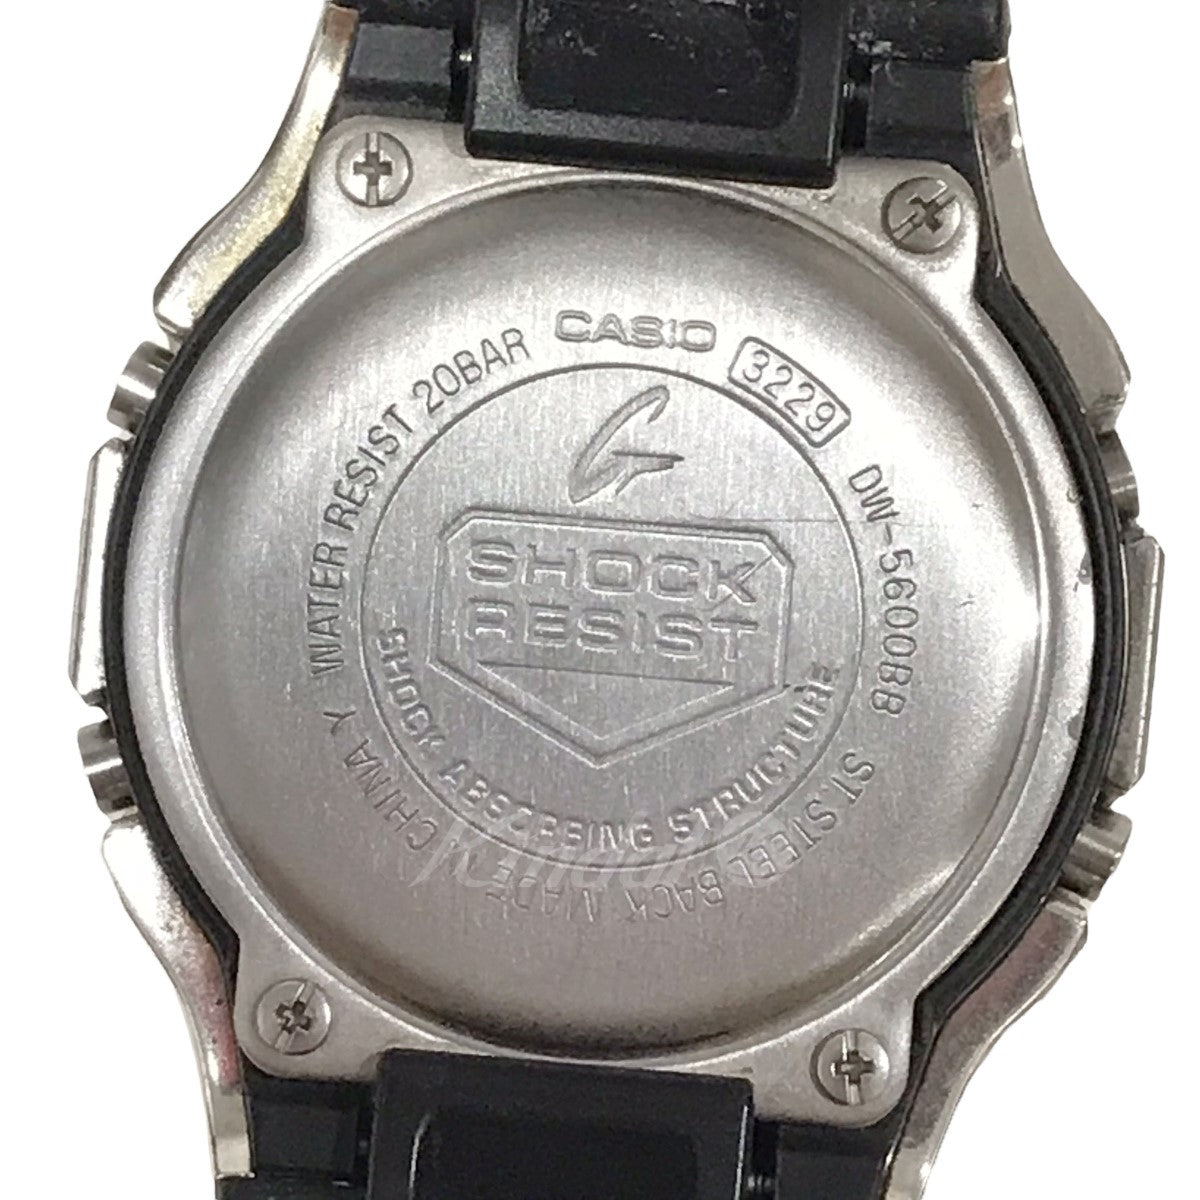 DAMUE(ダミュー) 腕時計 Custom G-SHOCK DW-5600BB ブラック・シルバー ...